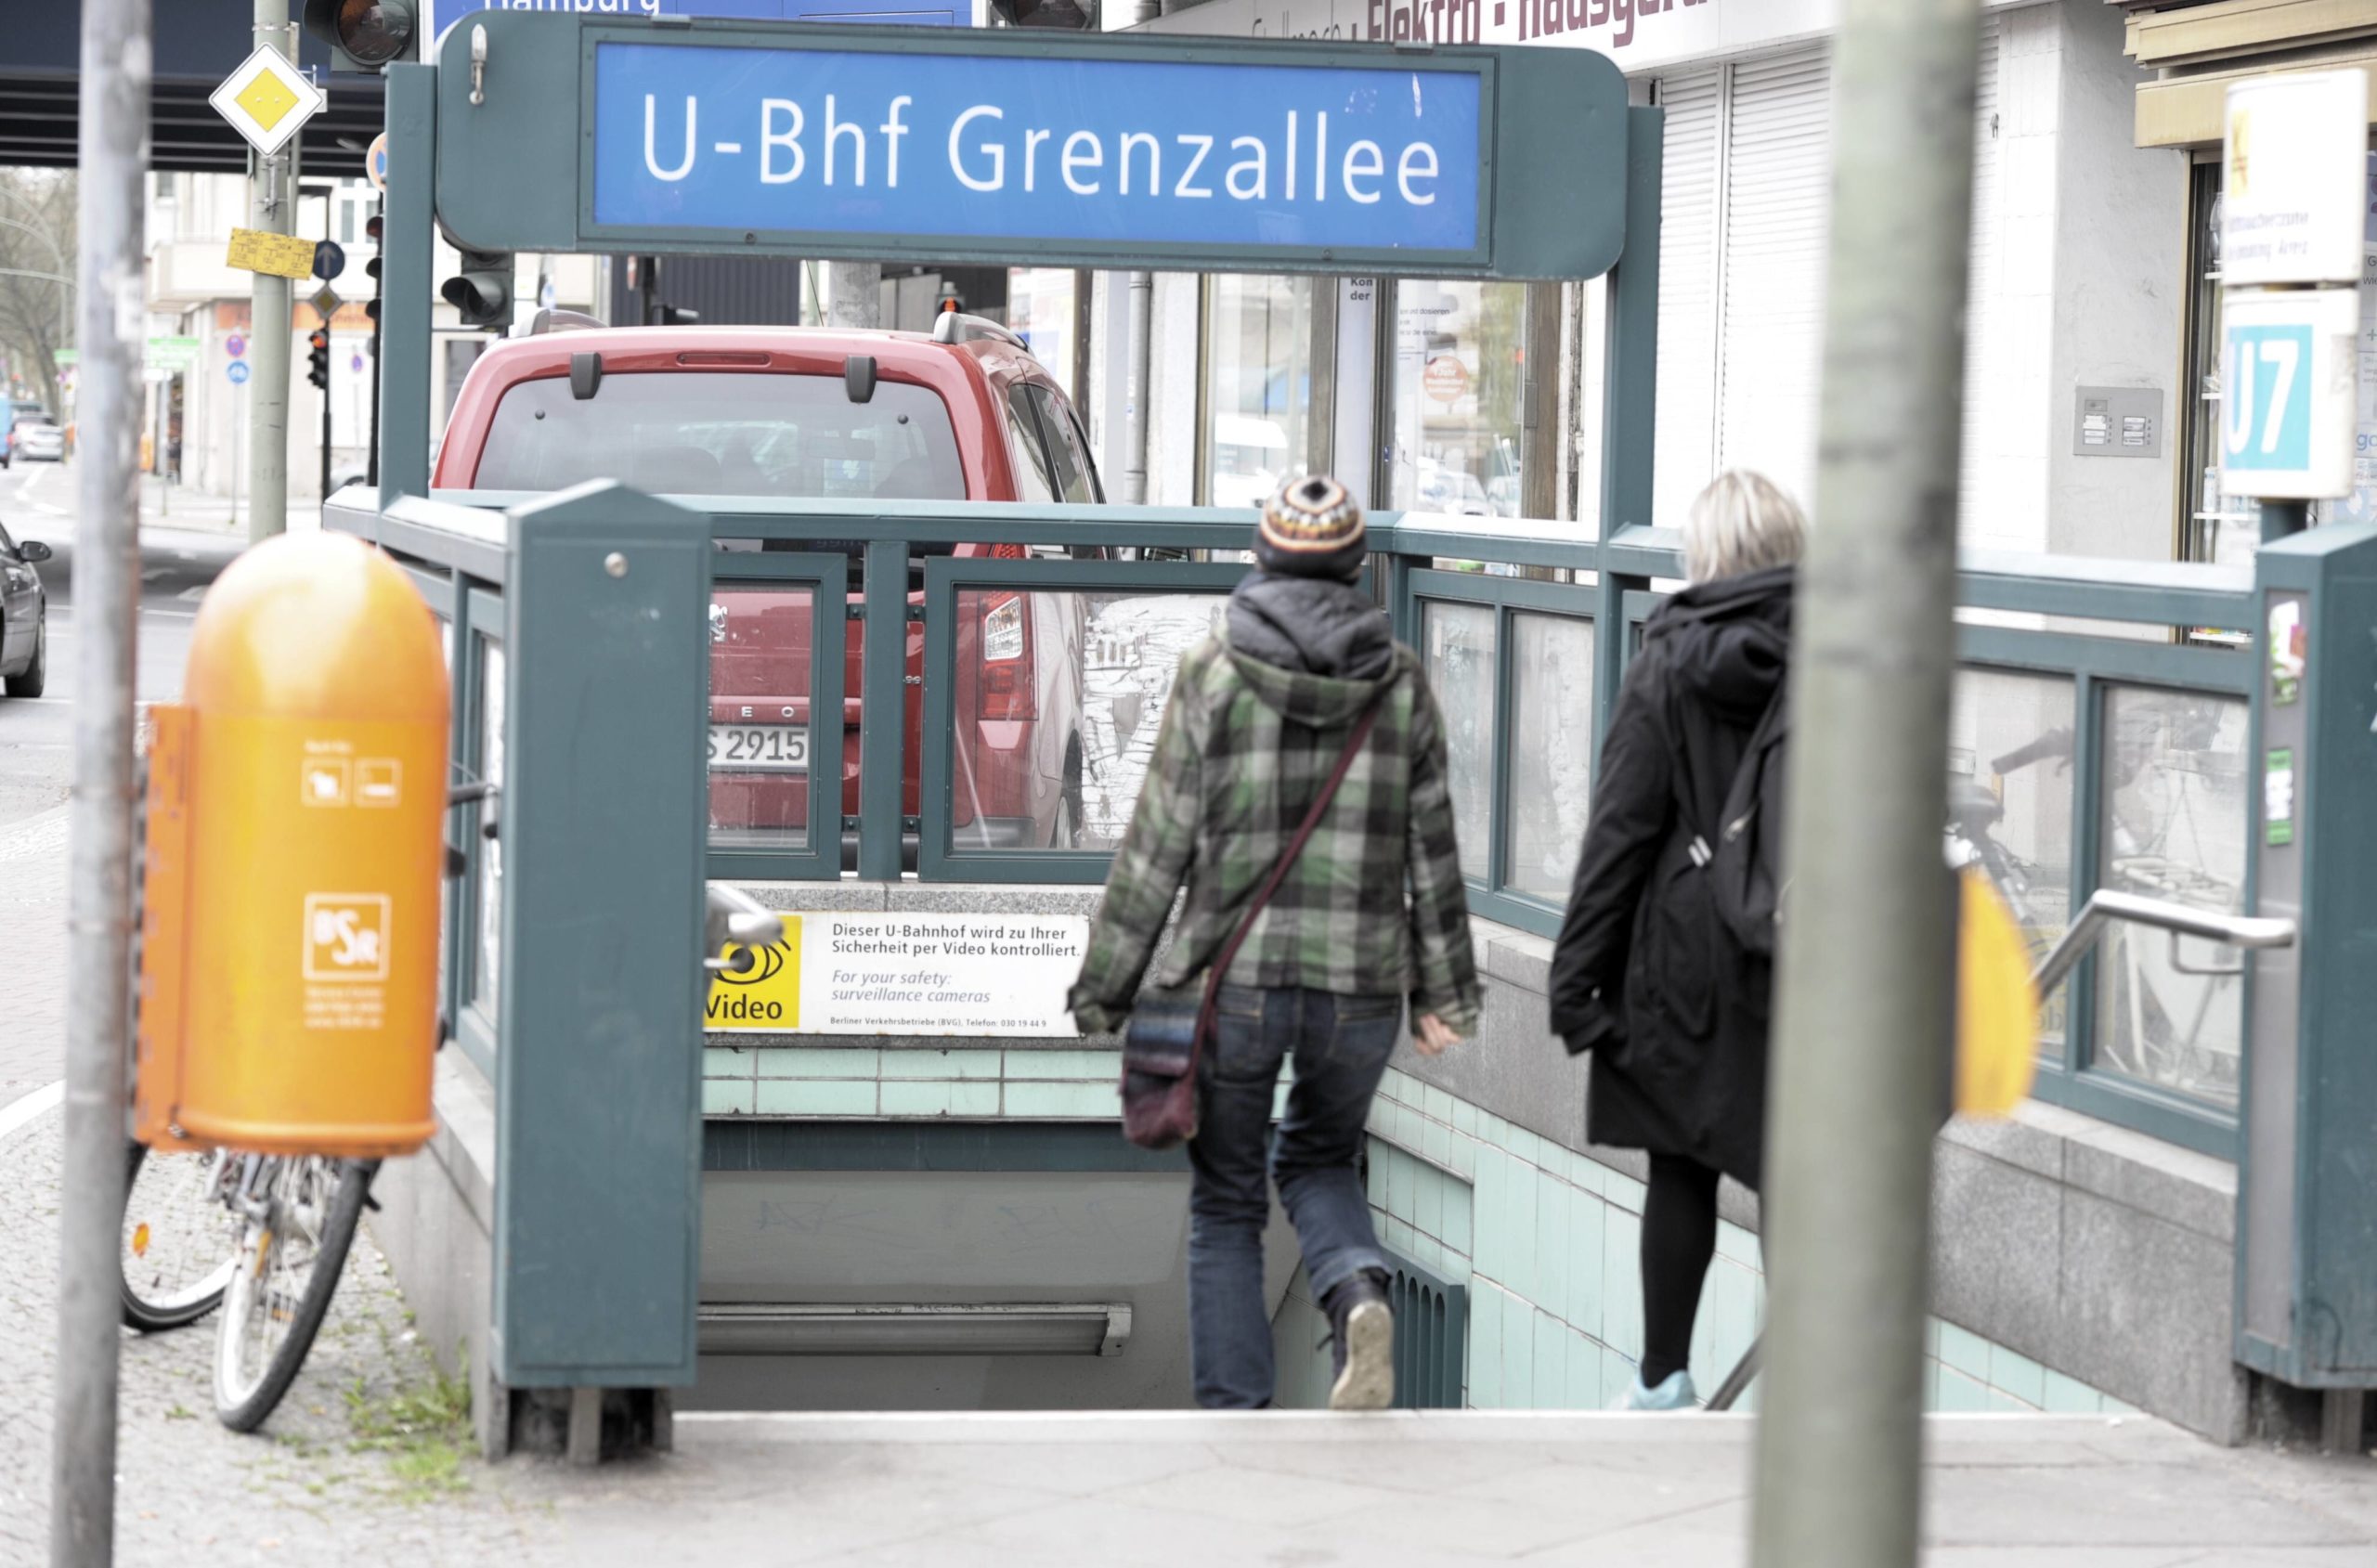 Am Zugang zur Station sieht man bereits die hellgrünen Kacheln. Foto: Imago/Klaus Martin Höfer